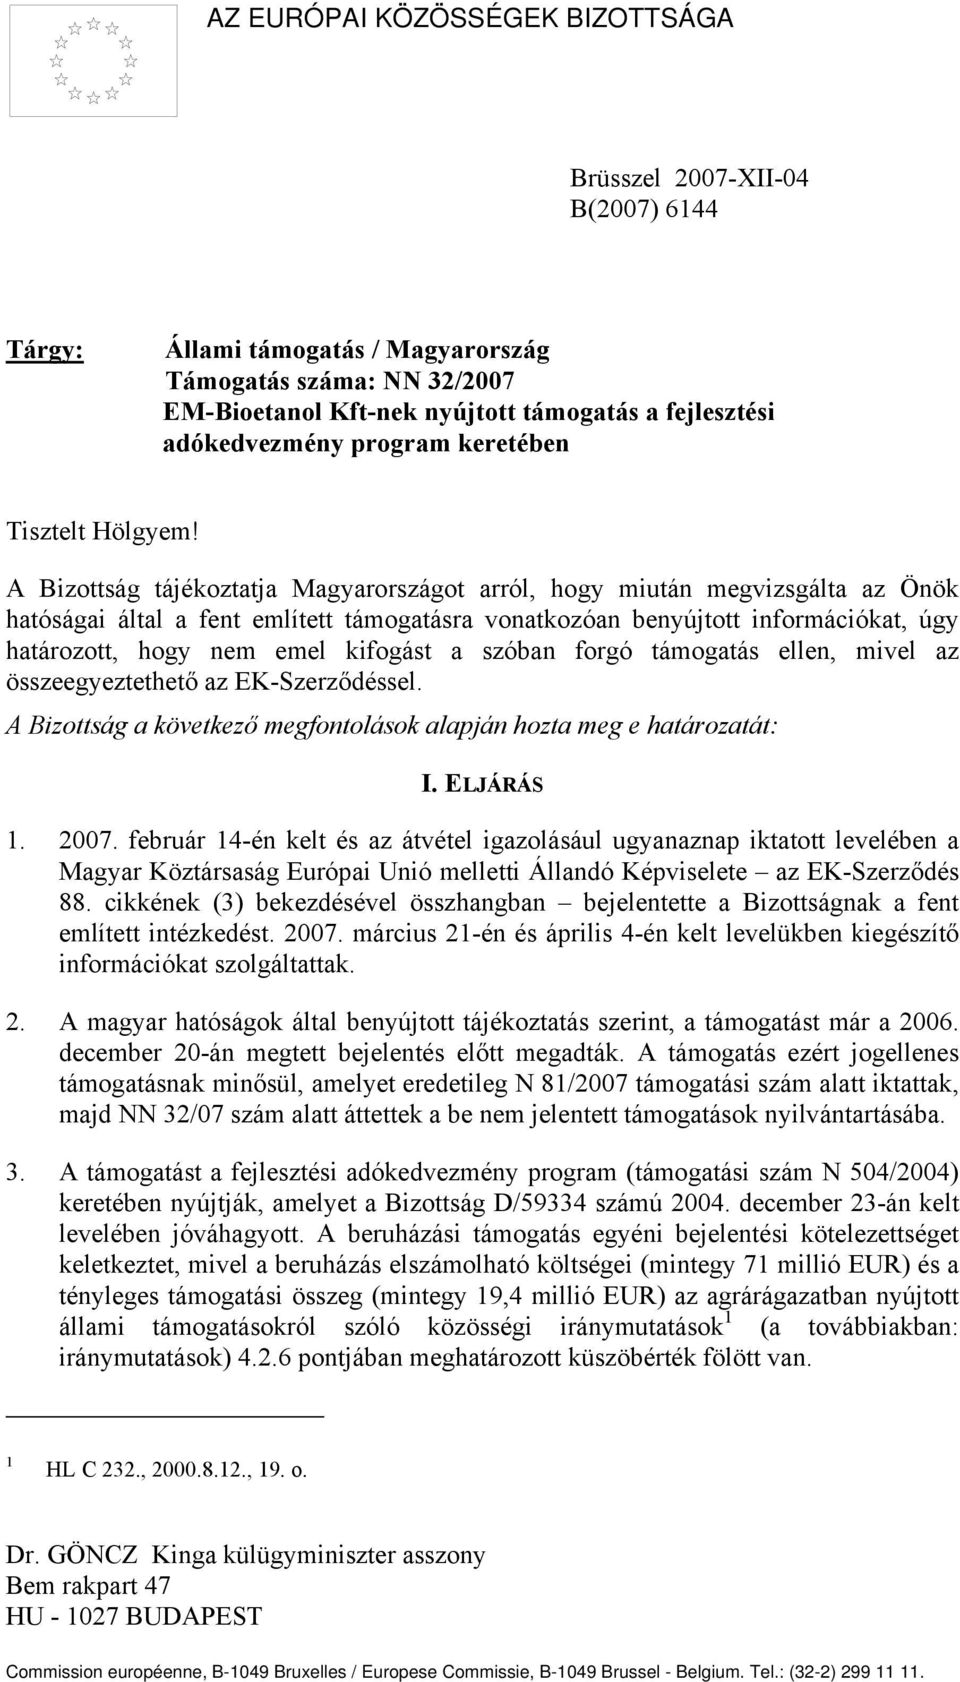 A Bizottság tájékoztatja Magyarországot arról, hogy miután megvizsgálta az Önök hatóságai által a fent említett támogatásra vonatkozóan benyújtott információkat, úgy határozott, hogy nem emel